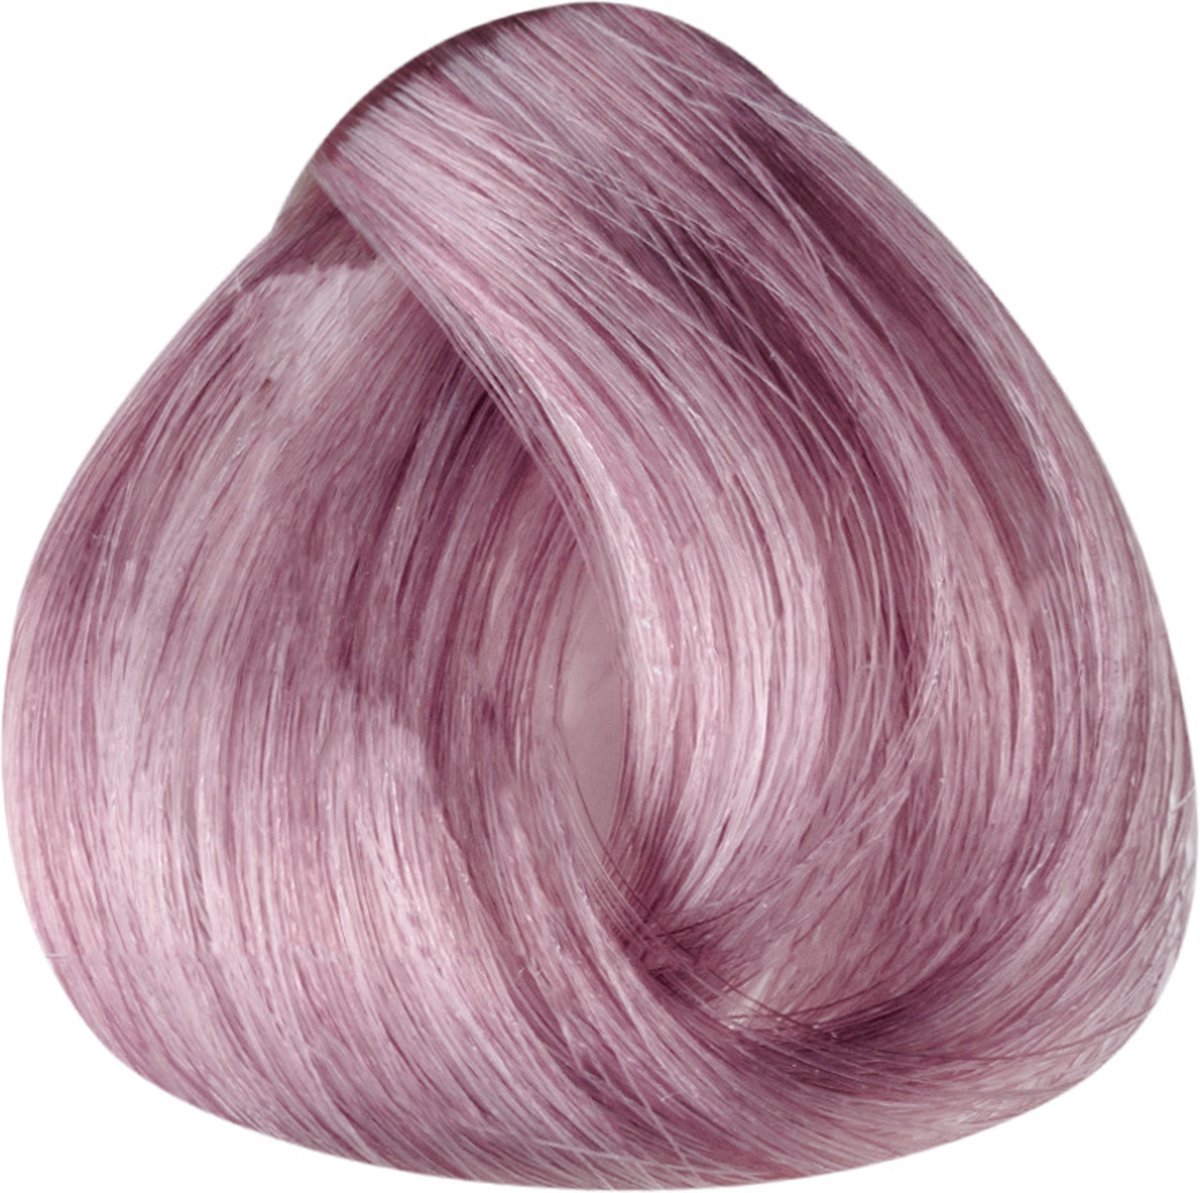 Imperity Singularity Haarverf - Candy Pink - 100ml - Permanente Haarverf